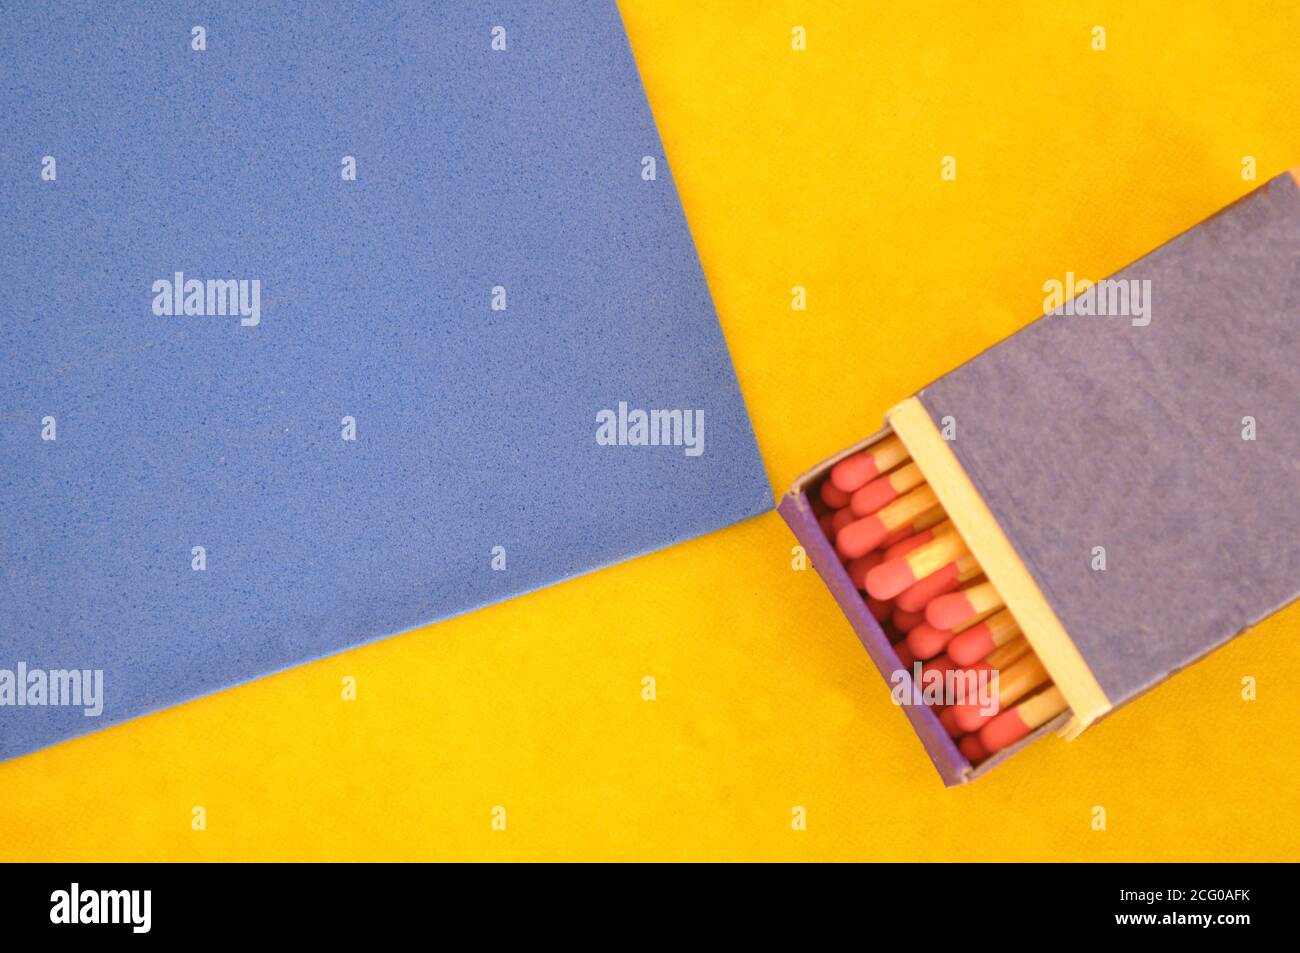 Matchbox, in legno, fiammiferi con testa rossa in scatola a metà apertura, su sfondo blu e giallo, con spazio per la copia Foto Stock